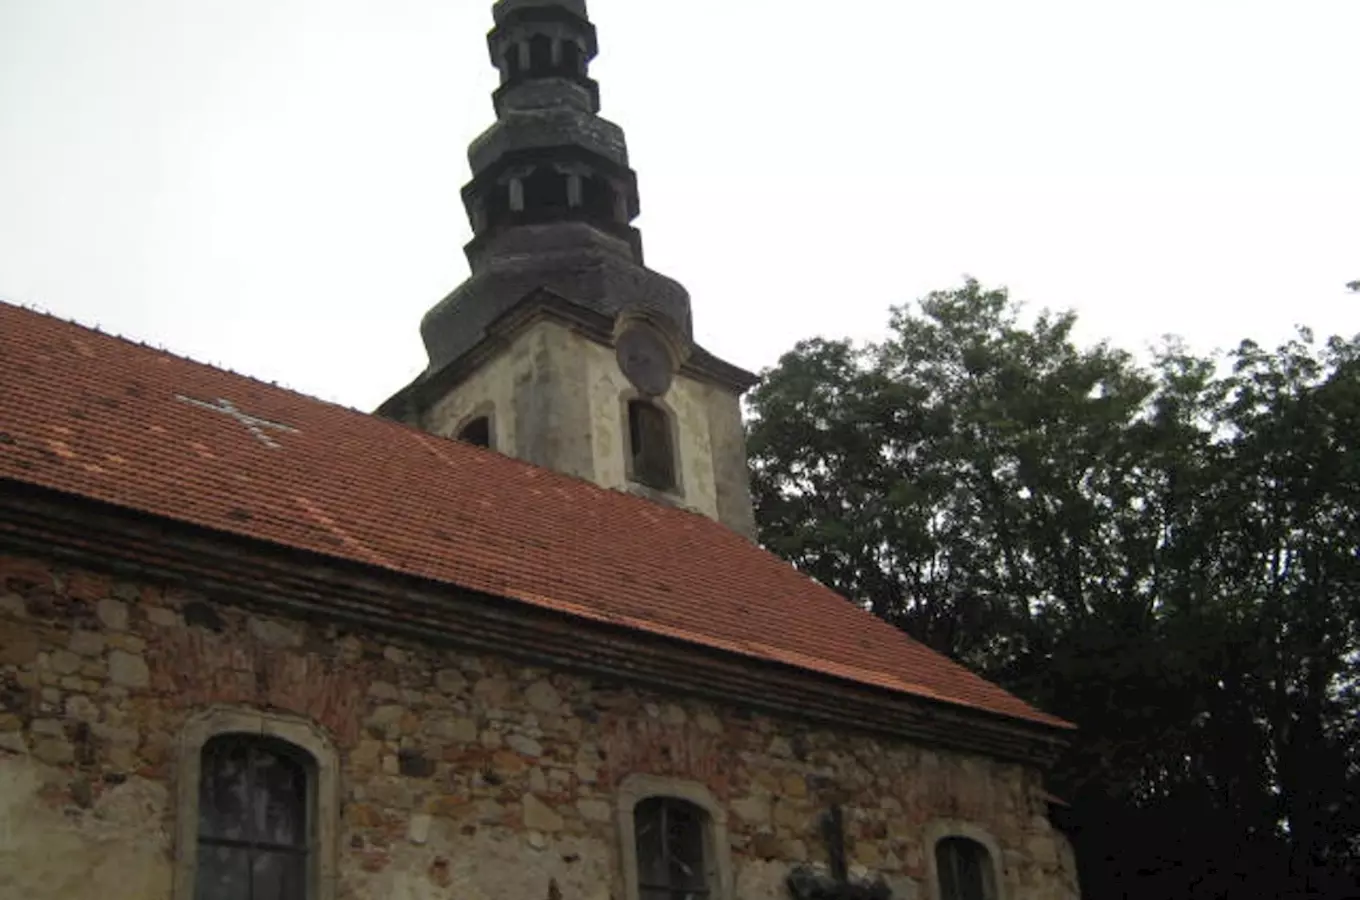 Zaniklý kostel sv. Šimona a Judy v Žibřidicích